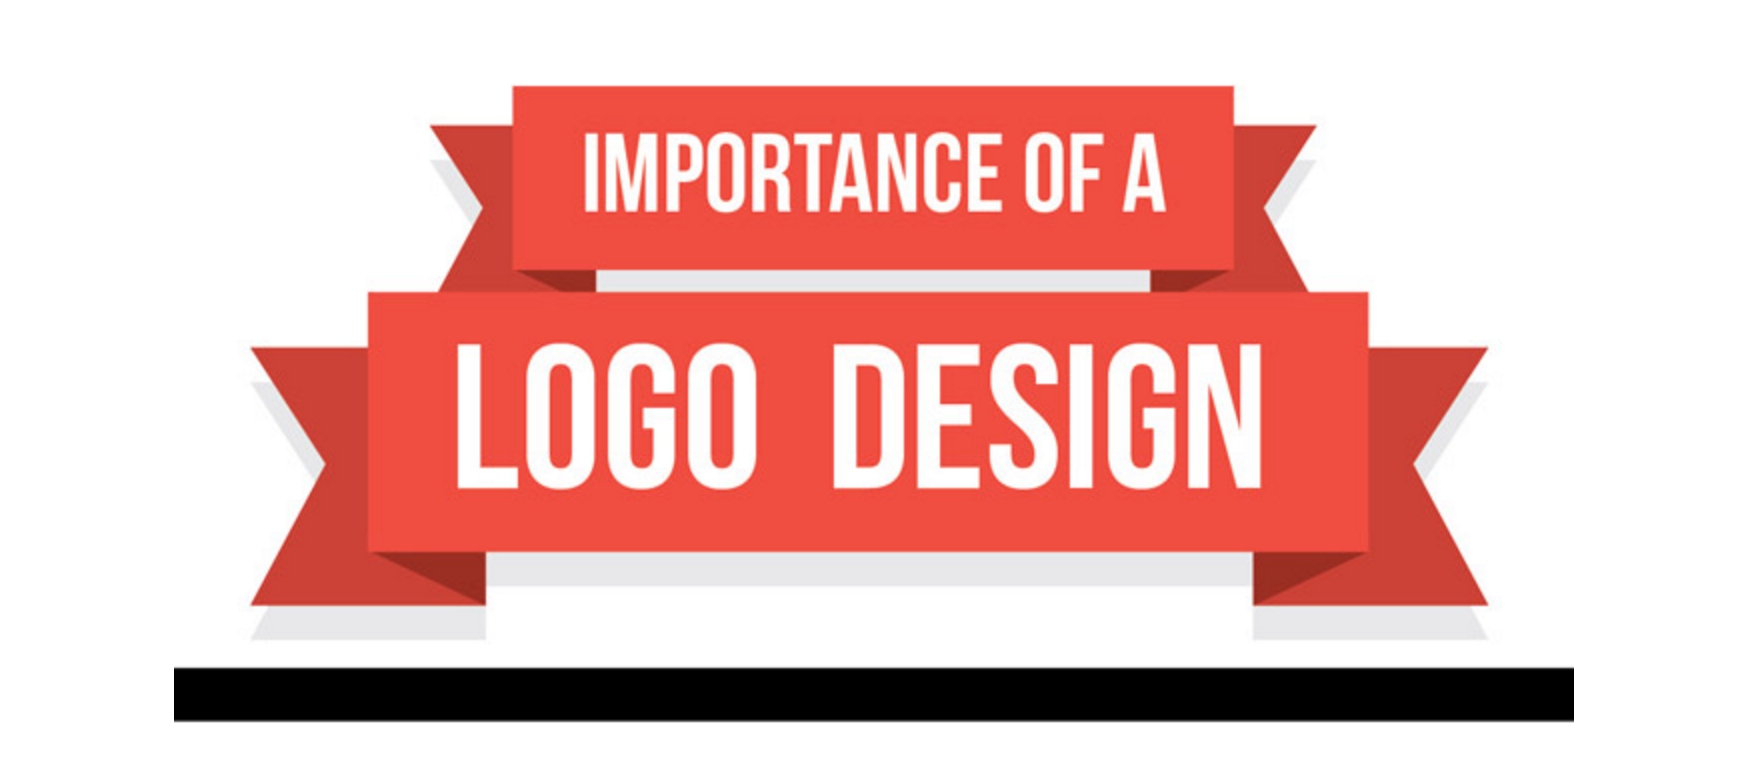 La importancia de un buen diseño de logo